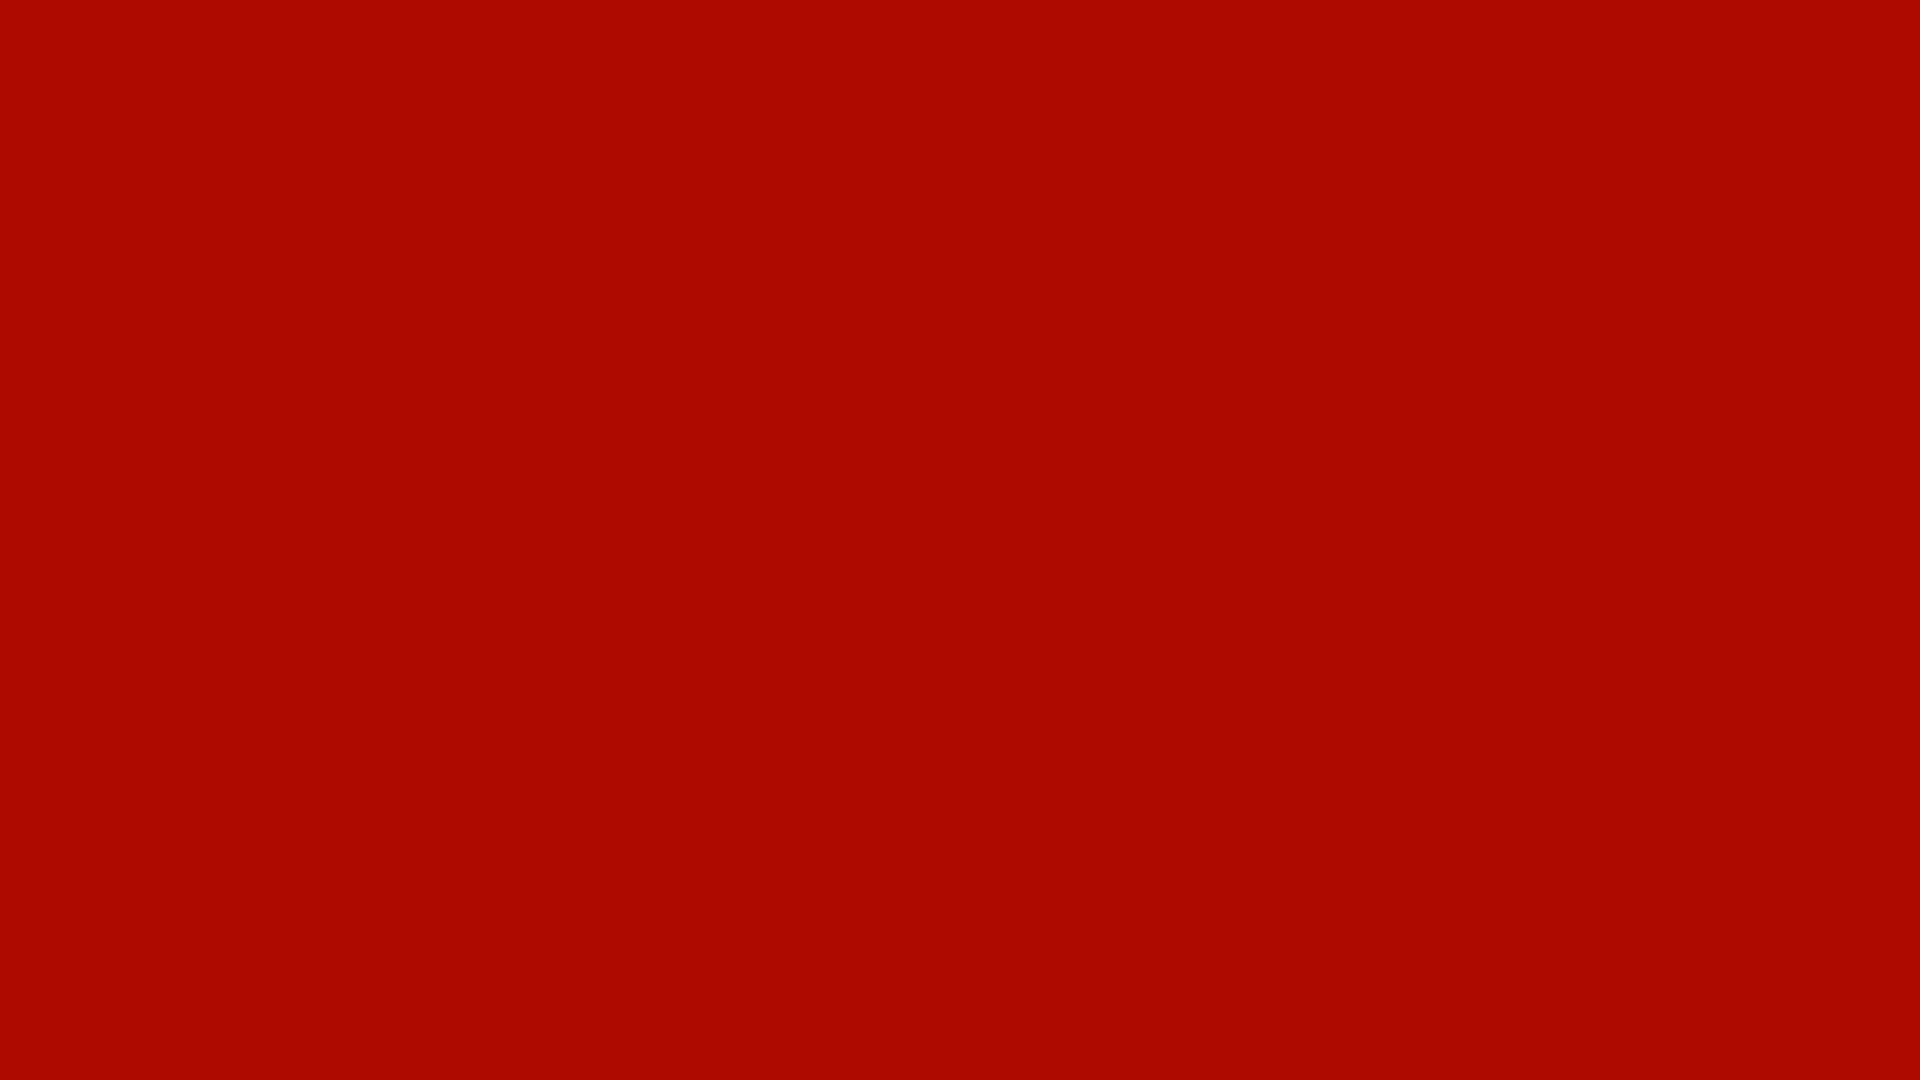 1920x1080 1920Ã1080-mordant-red-19-solid-color-background